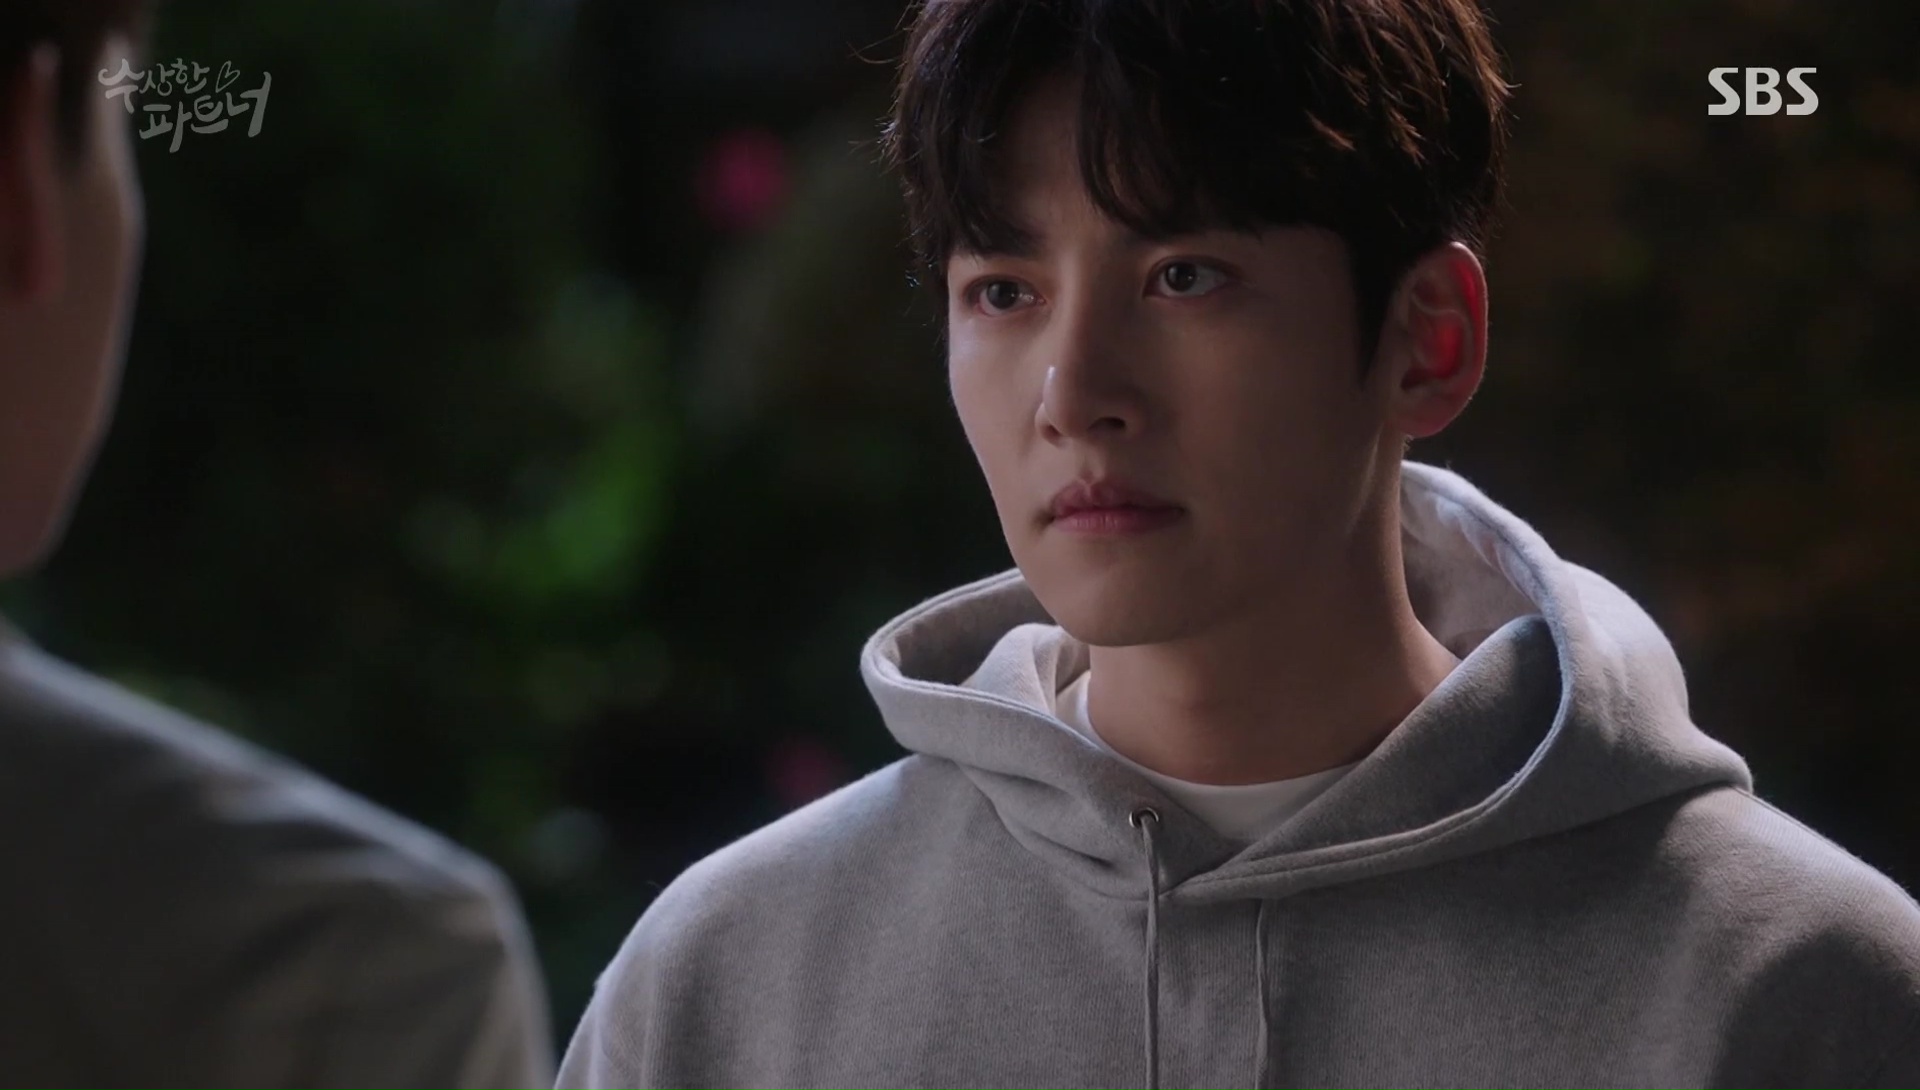 Suspicious Partner: Episodes 9-10 » Dramabeans Korean drama recaps